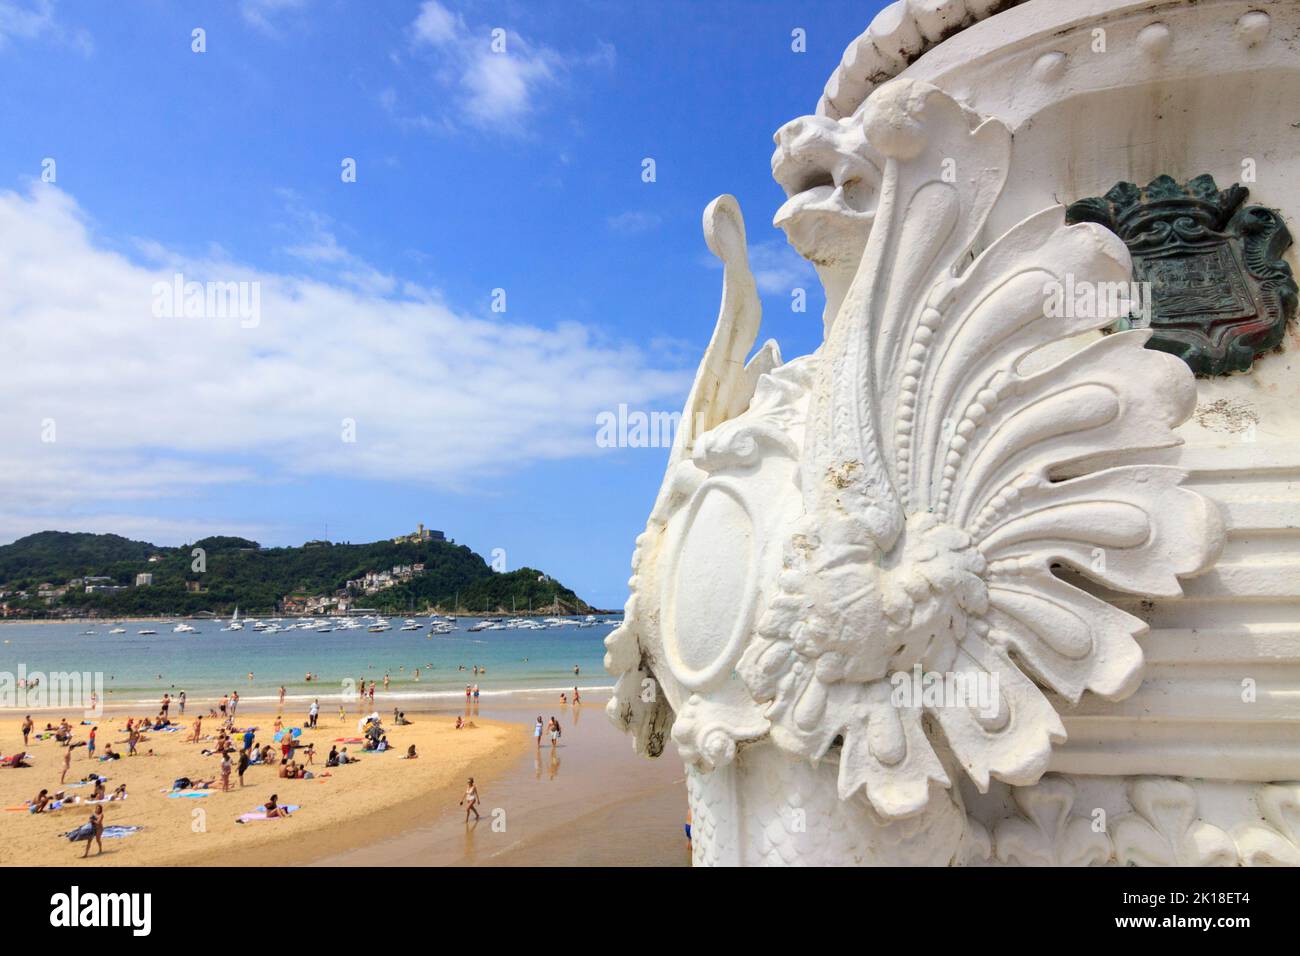 San Sebastián, País Vasco, España : Detalle de las emblemáticas farolas del paseo marítimo de la Concha con amantes de la playa en el fondo. Foto de stock